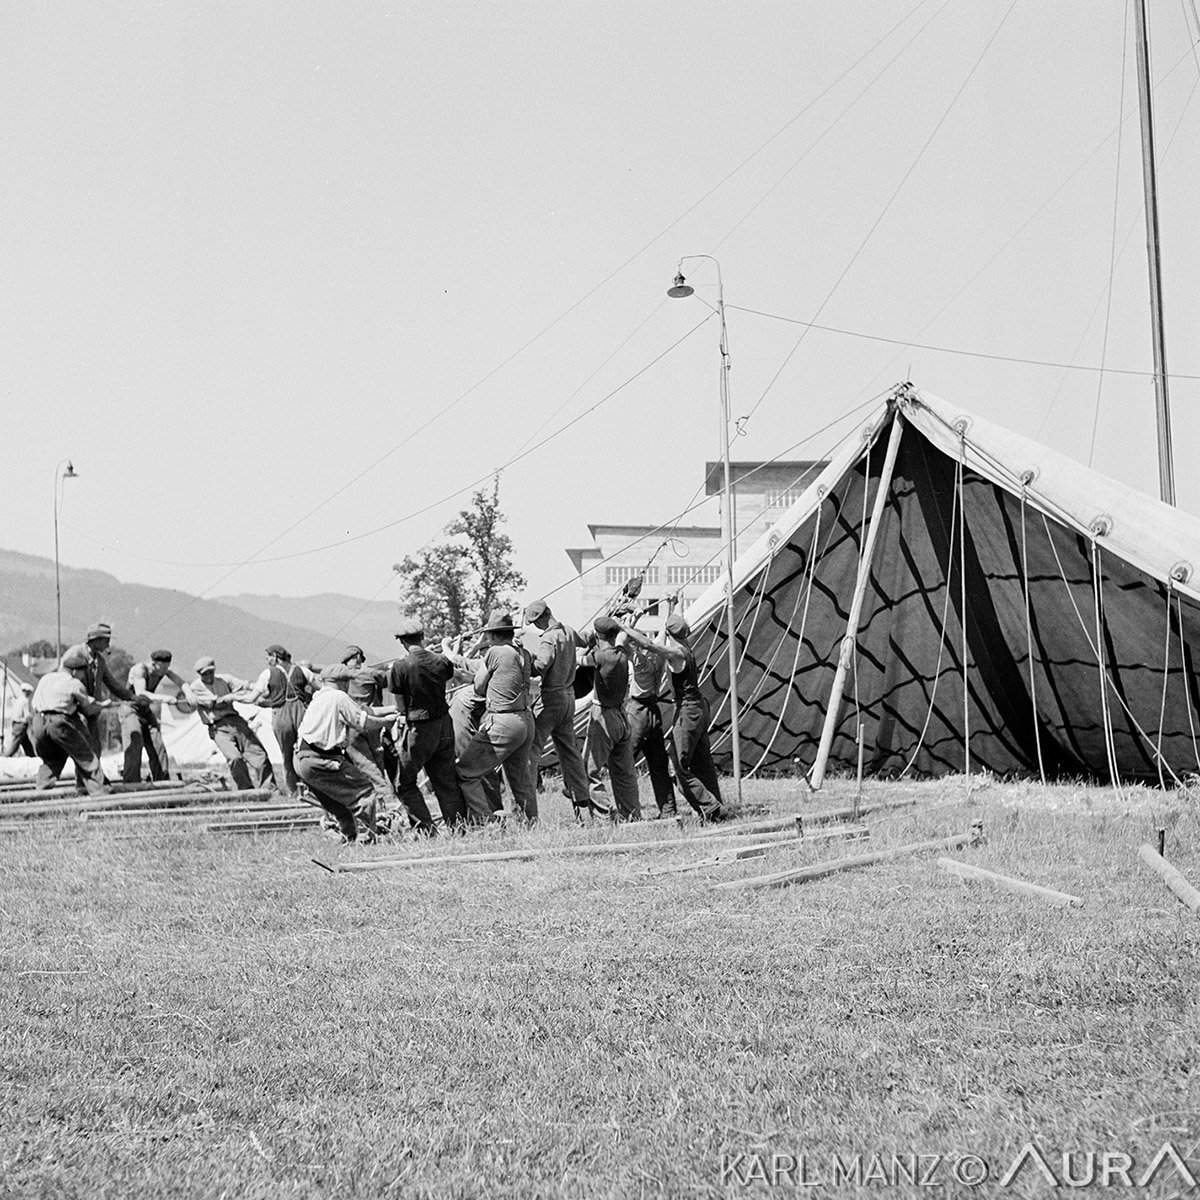 Circus Knie, Allmend Luzern 1938